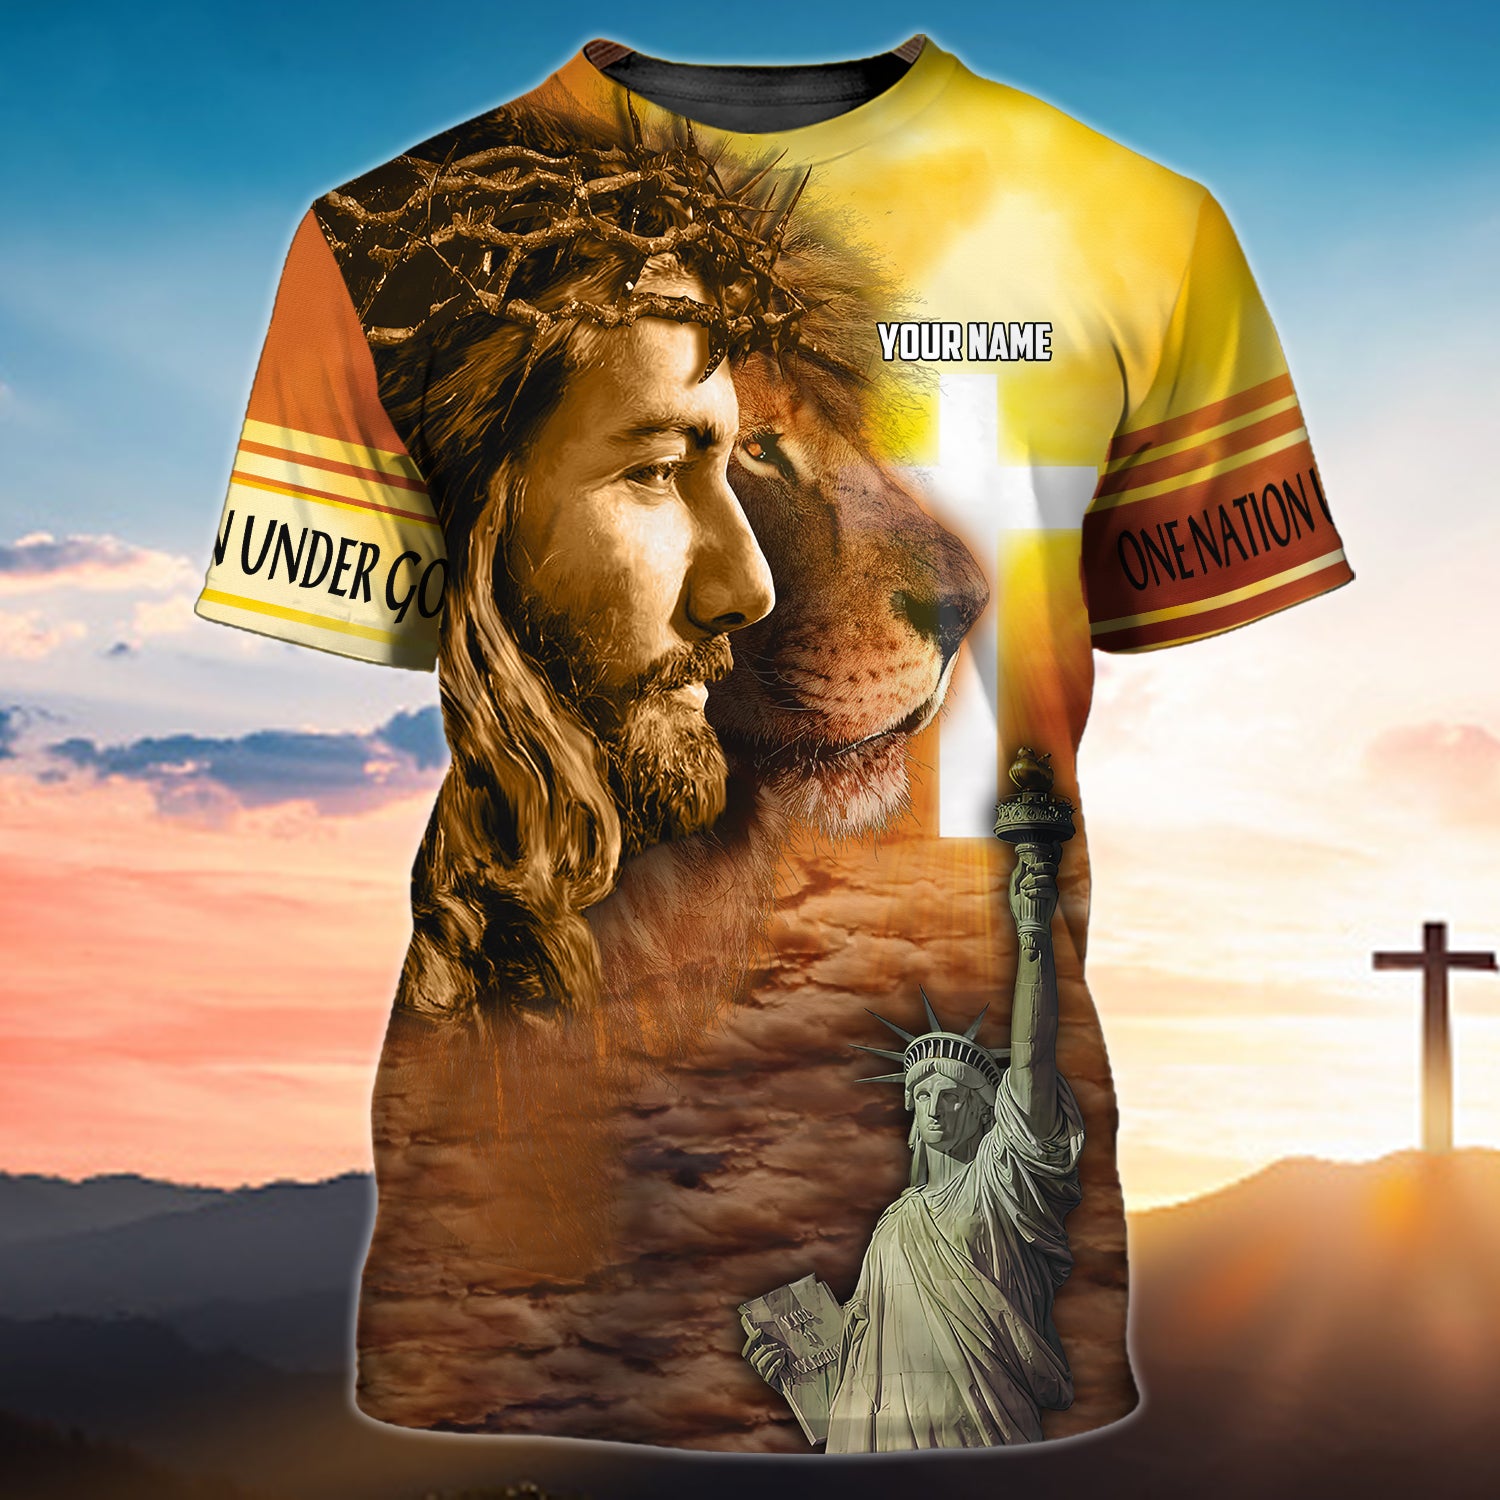 Customized Tshirt-One nation under god-HTV